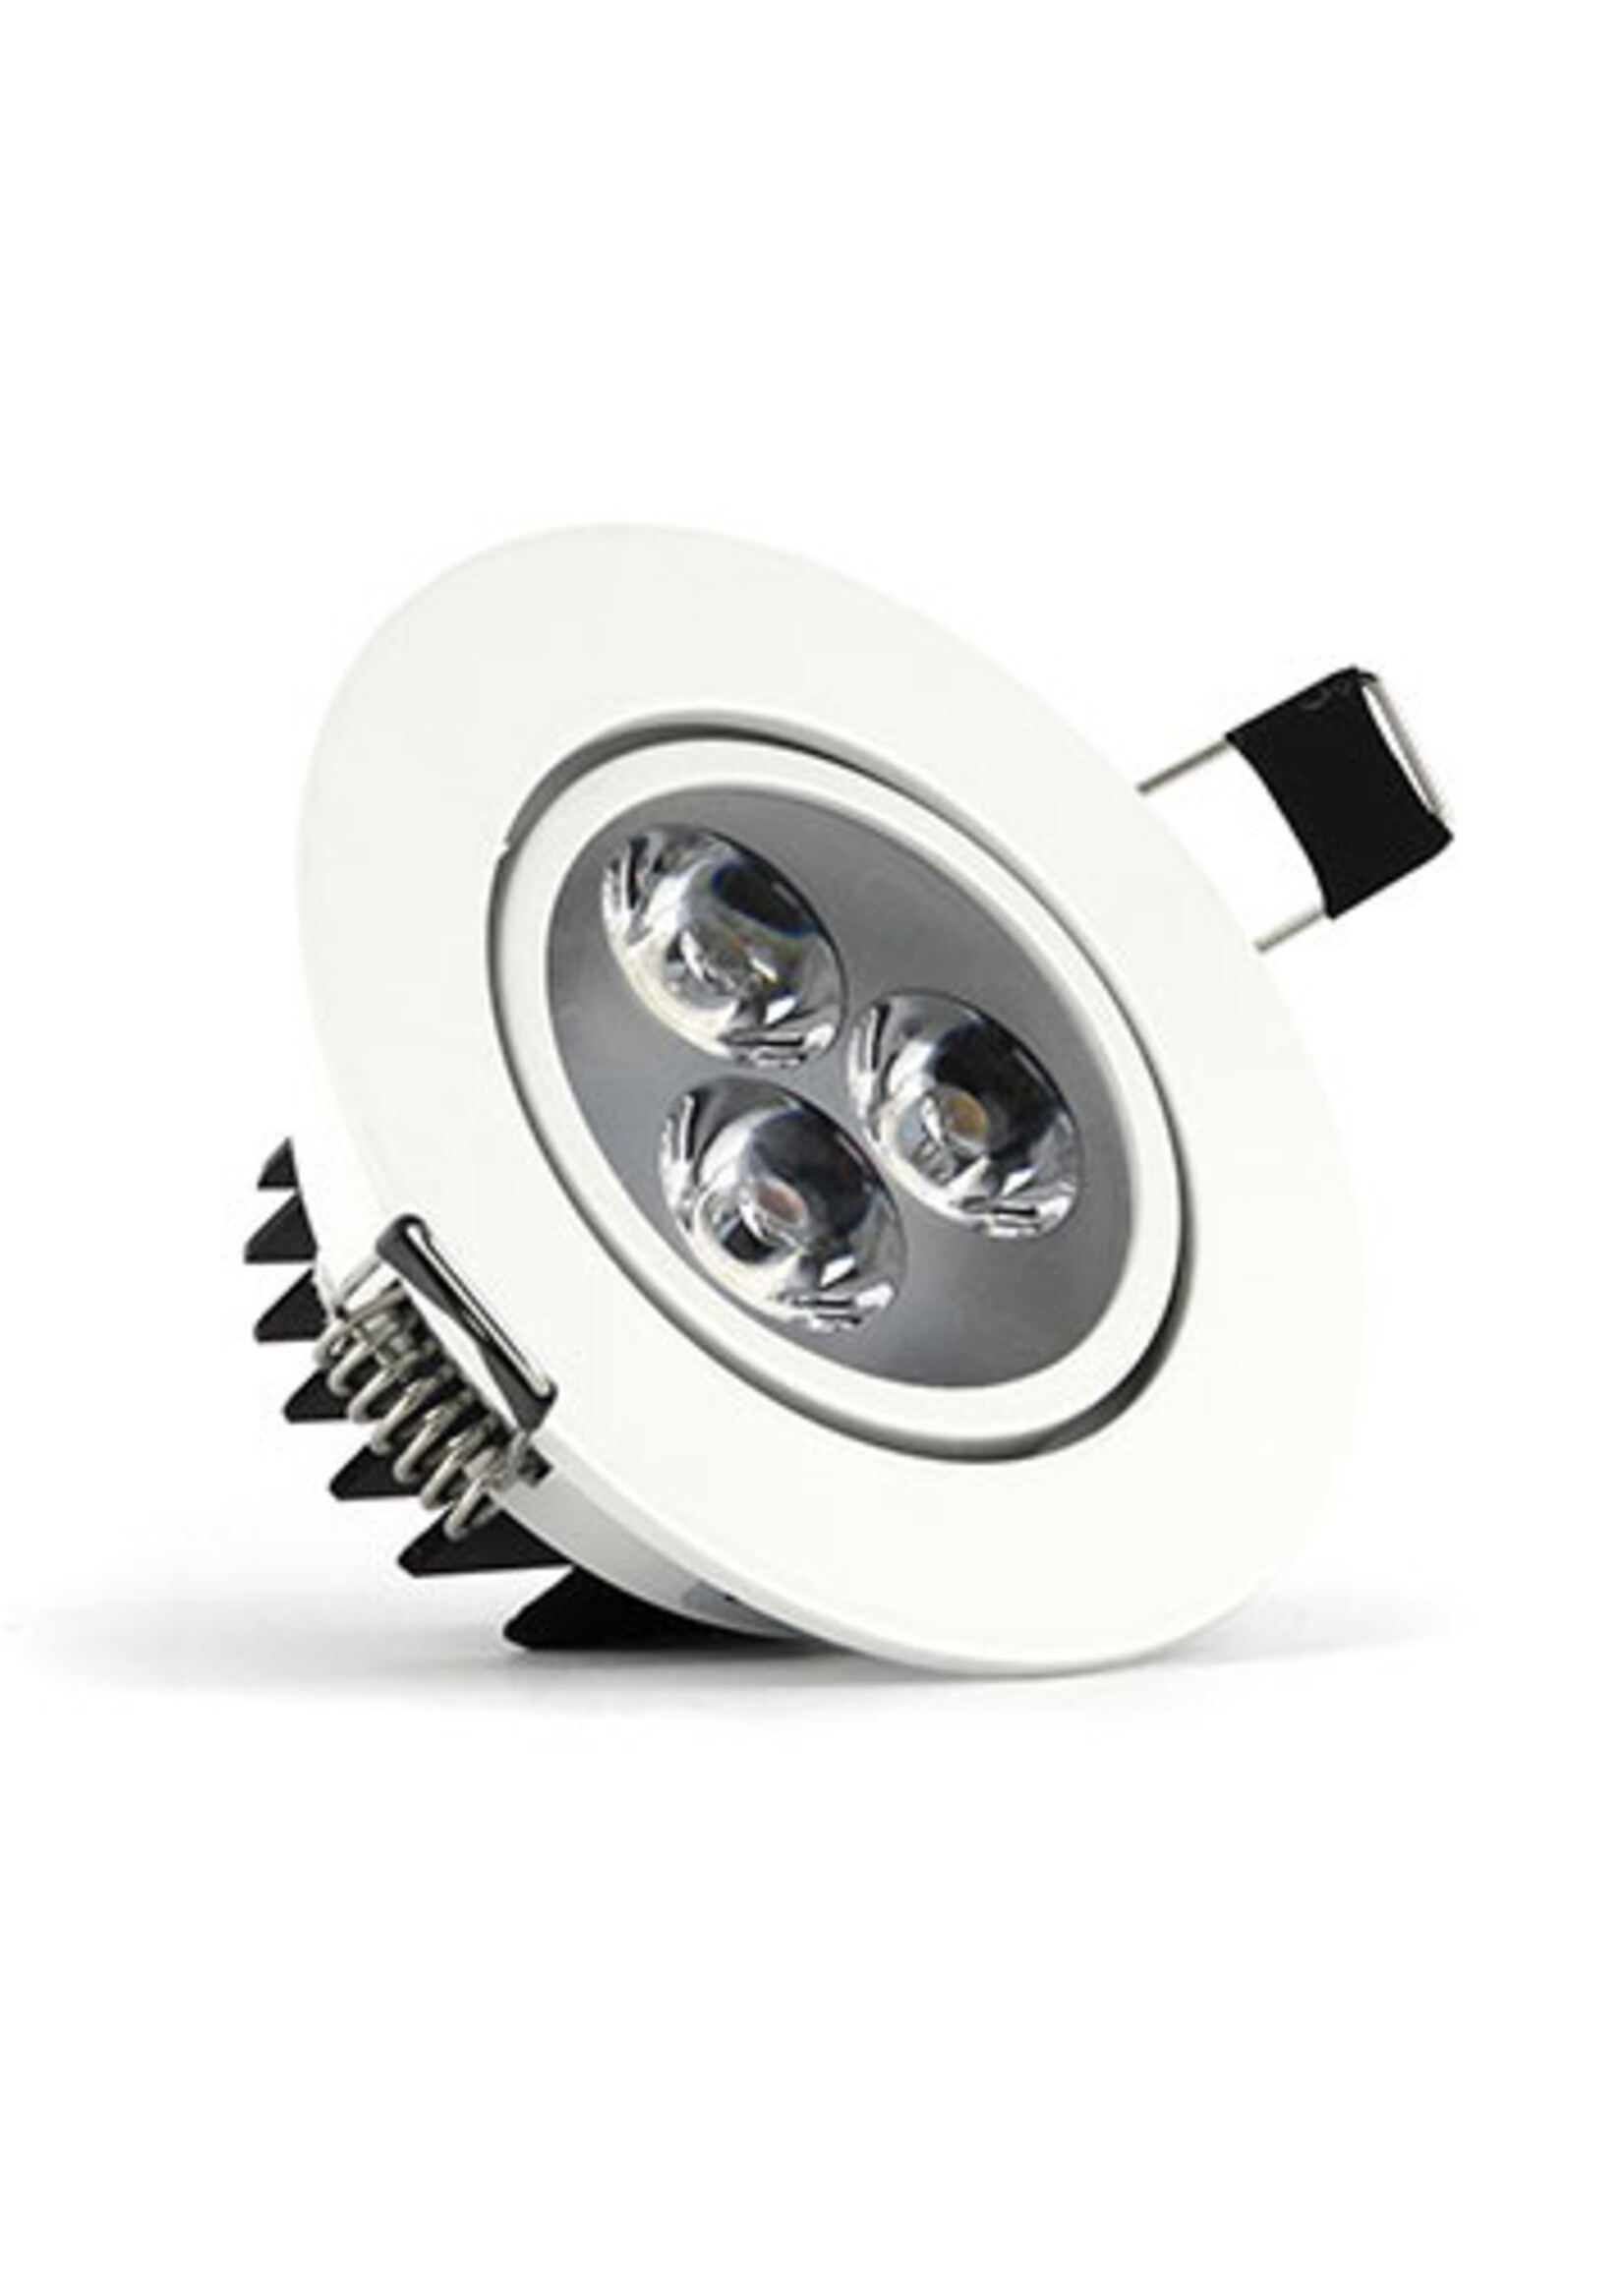 LEDWINKEL-Online LED Downlight 3W 2700K warm white ⌀85mm tiltable